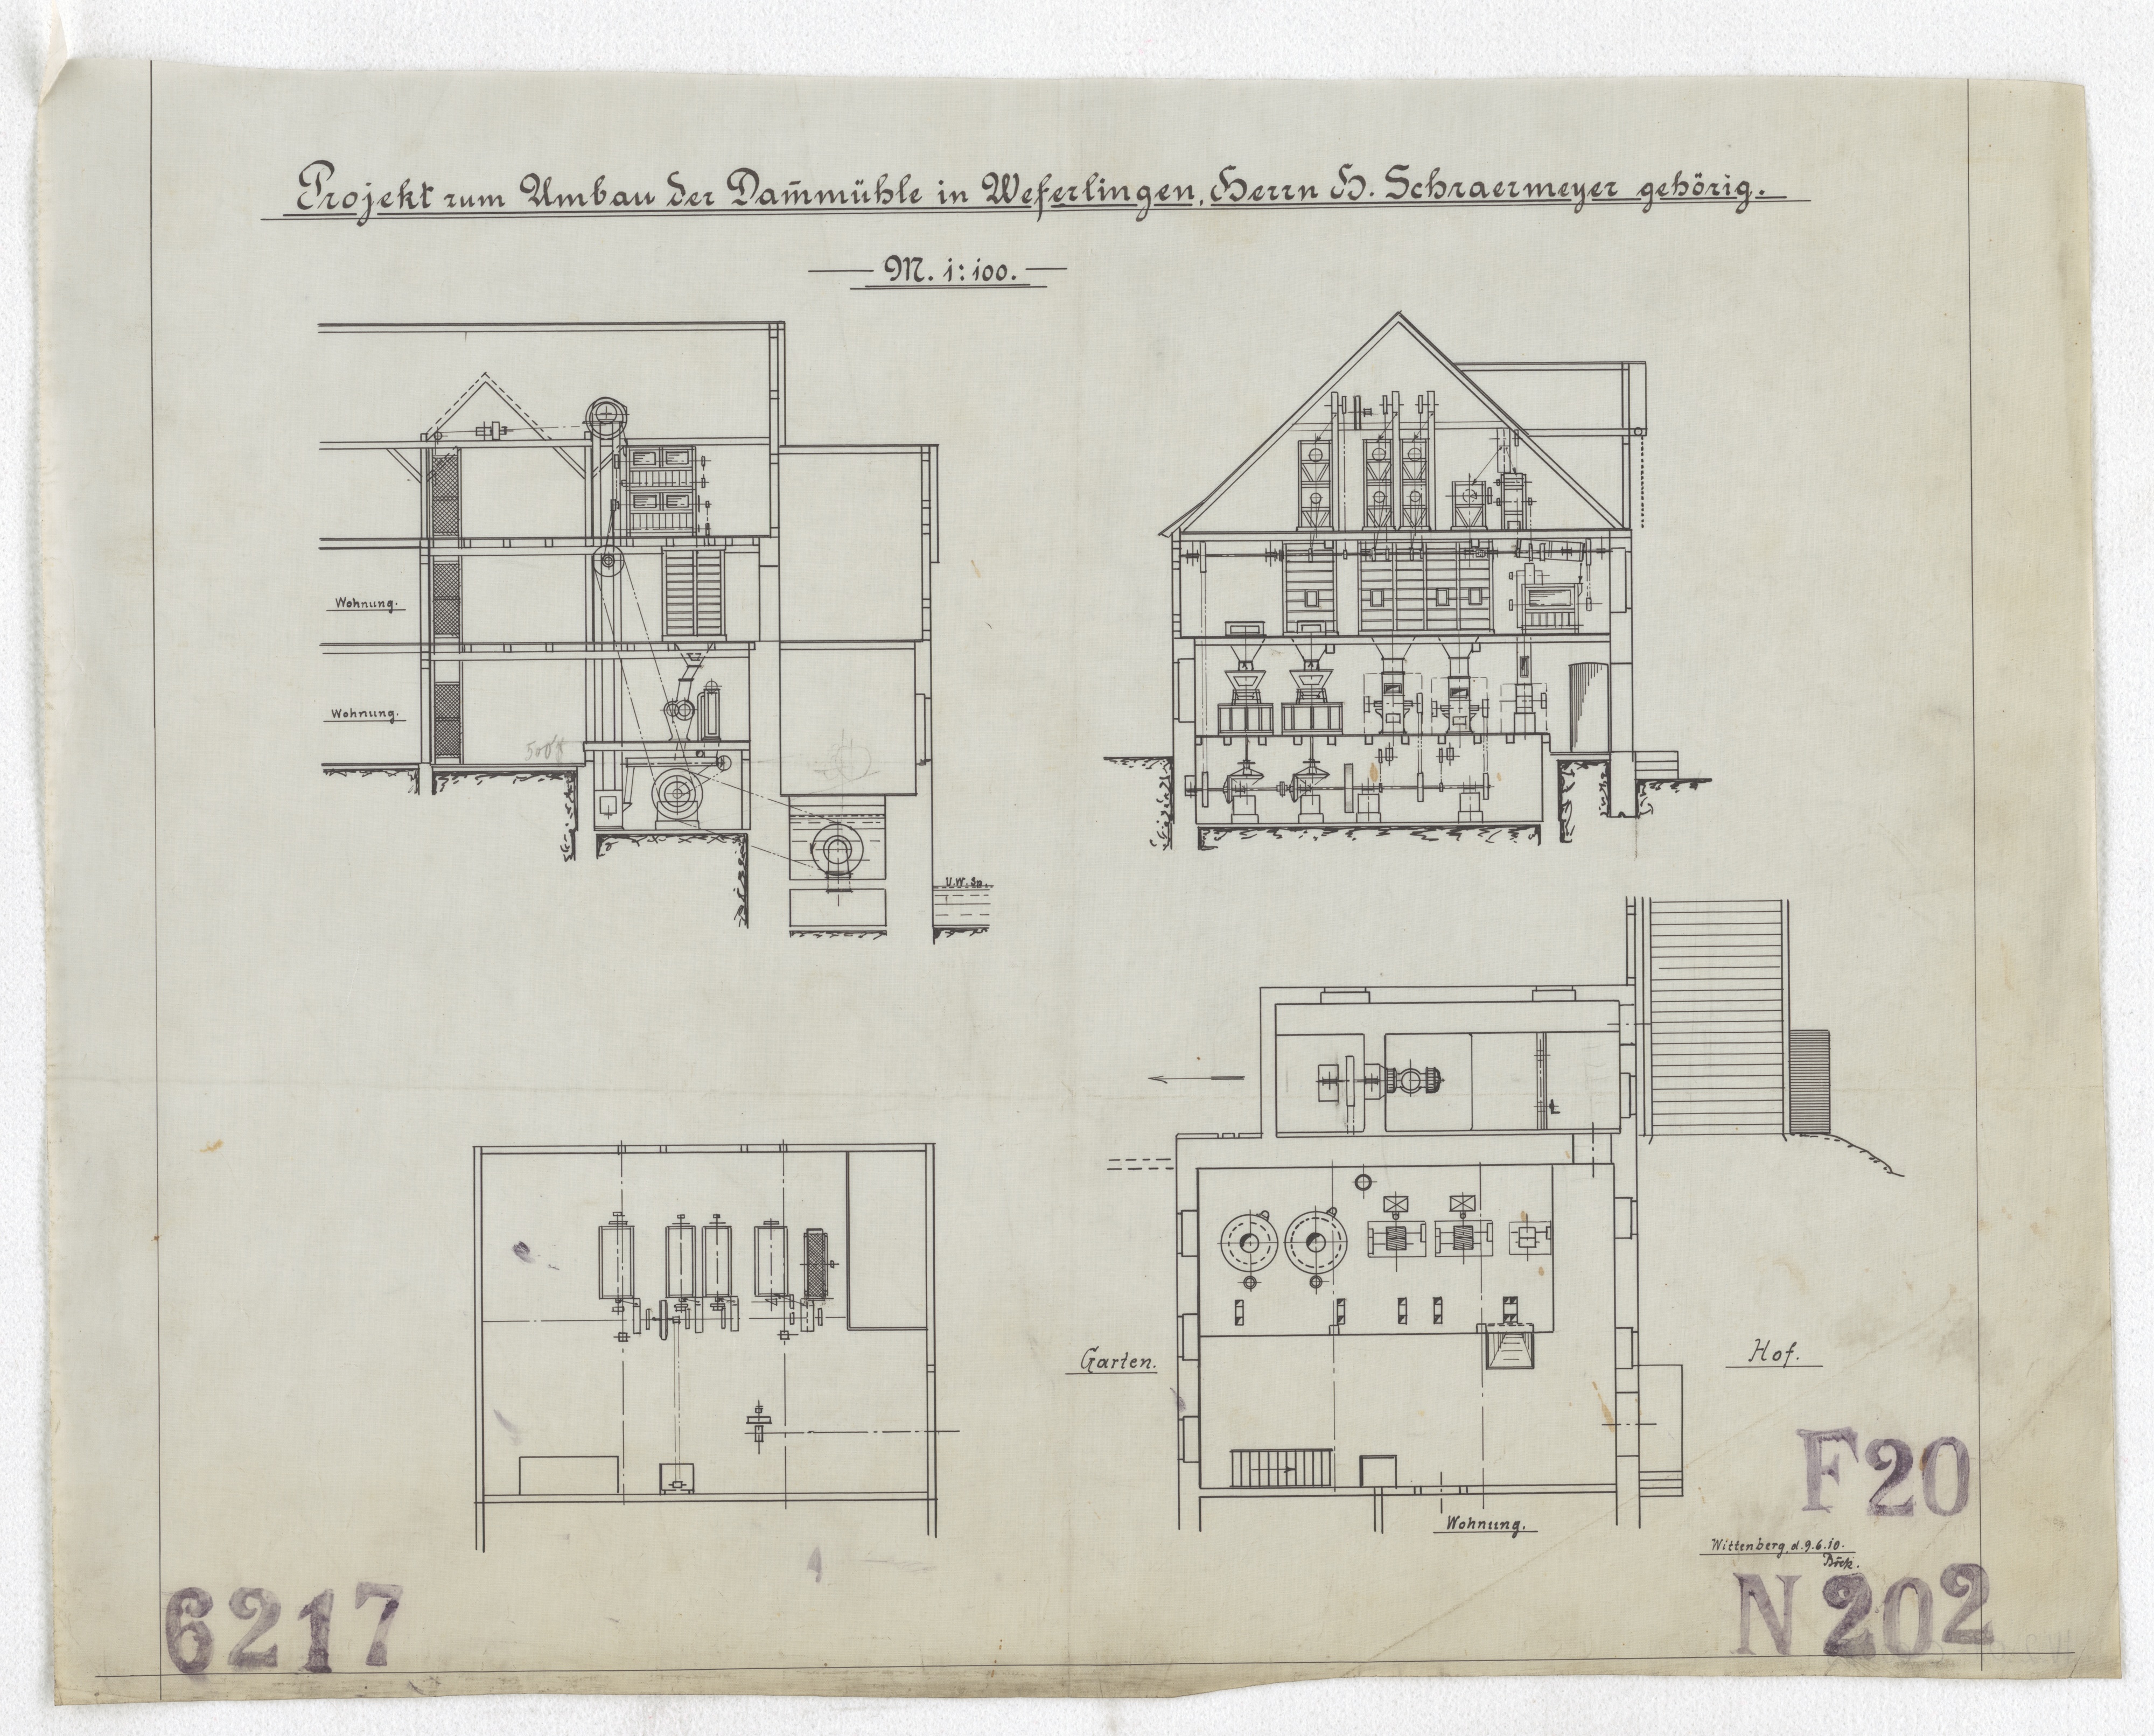 Technische Zeichnung : Projekt zum Umbau der Dammmühle in Weferlingen, Herrn H. Schraermeyer gehörig (Stiftung Deutsches Technikmuseum Berlin CC BY-SA)